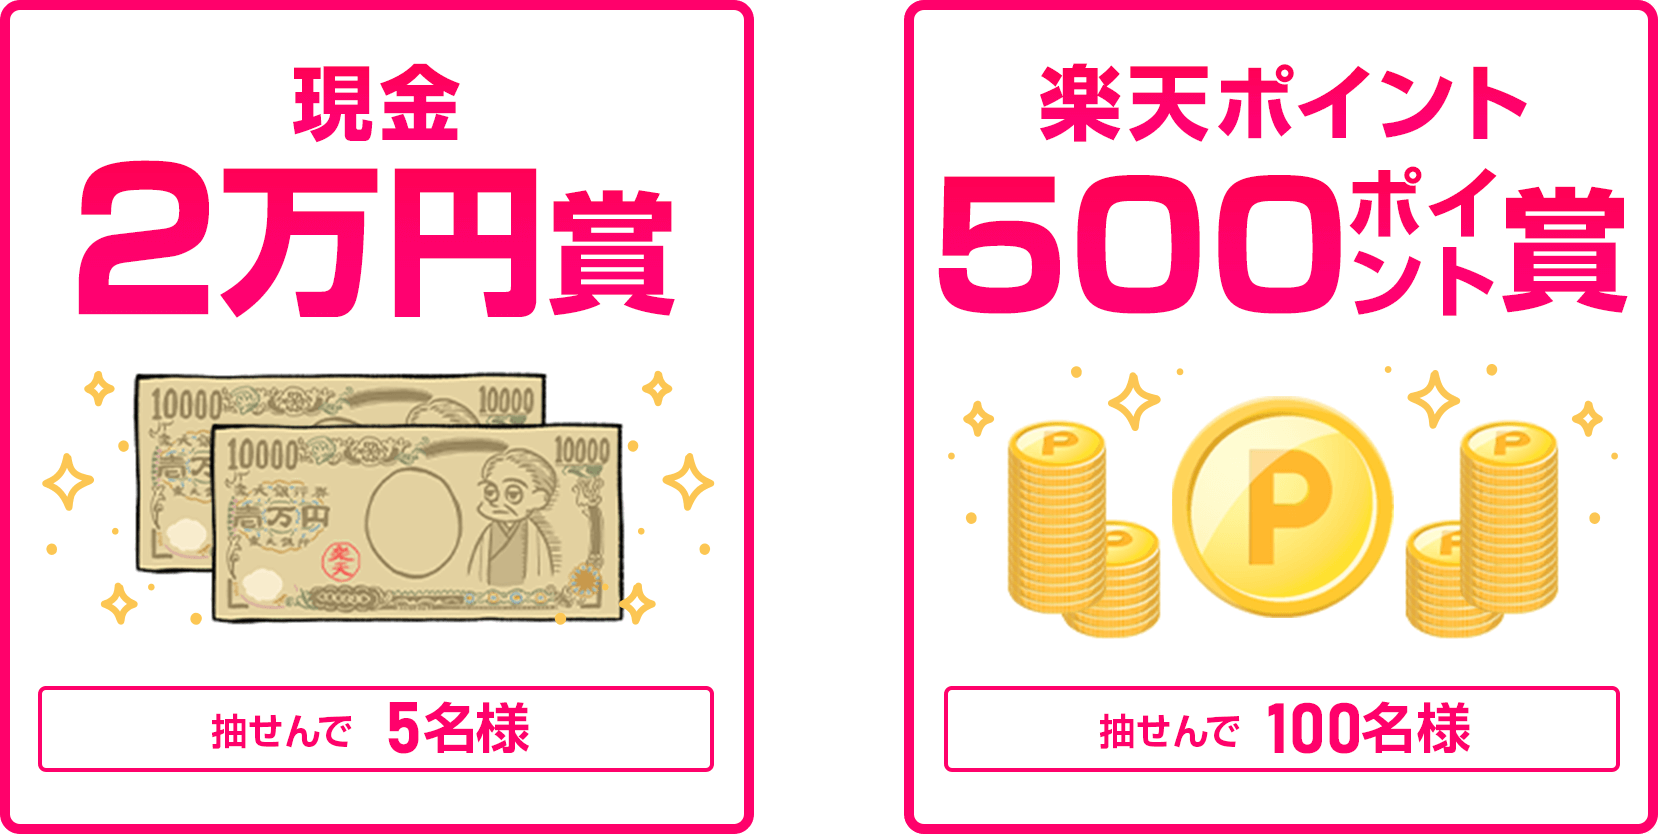 
                
                  現金2万円賞
                  抽せんで5名さまに
                  
                  500ポイント賞
                  抽せんで100名さまに
                  
                